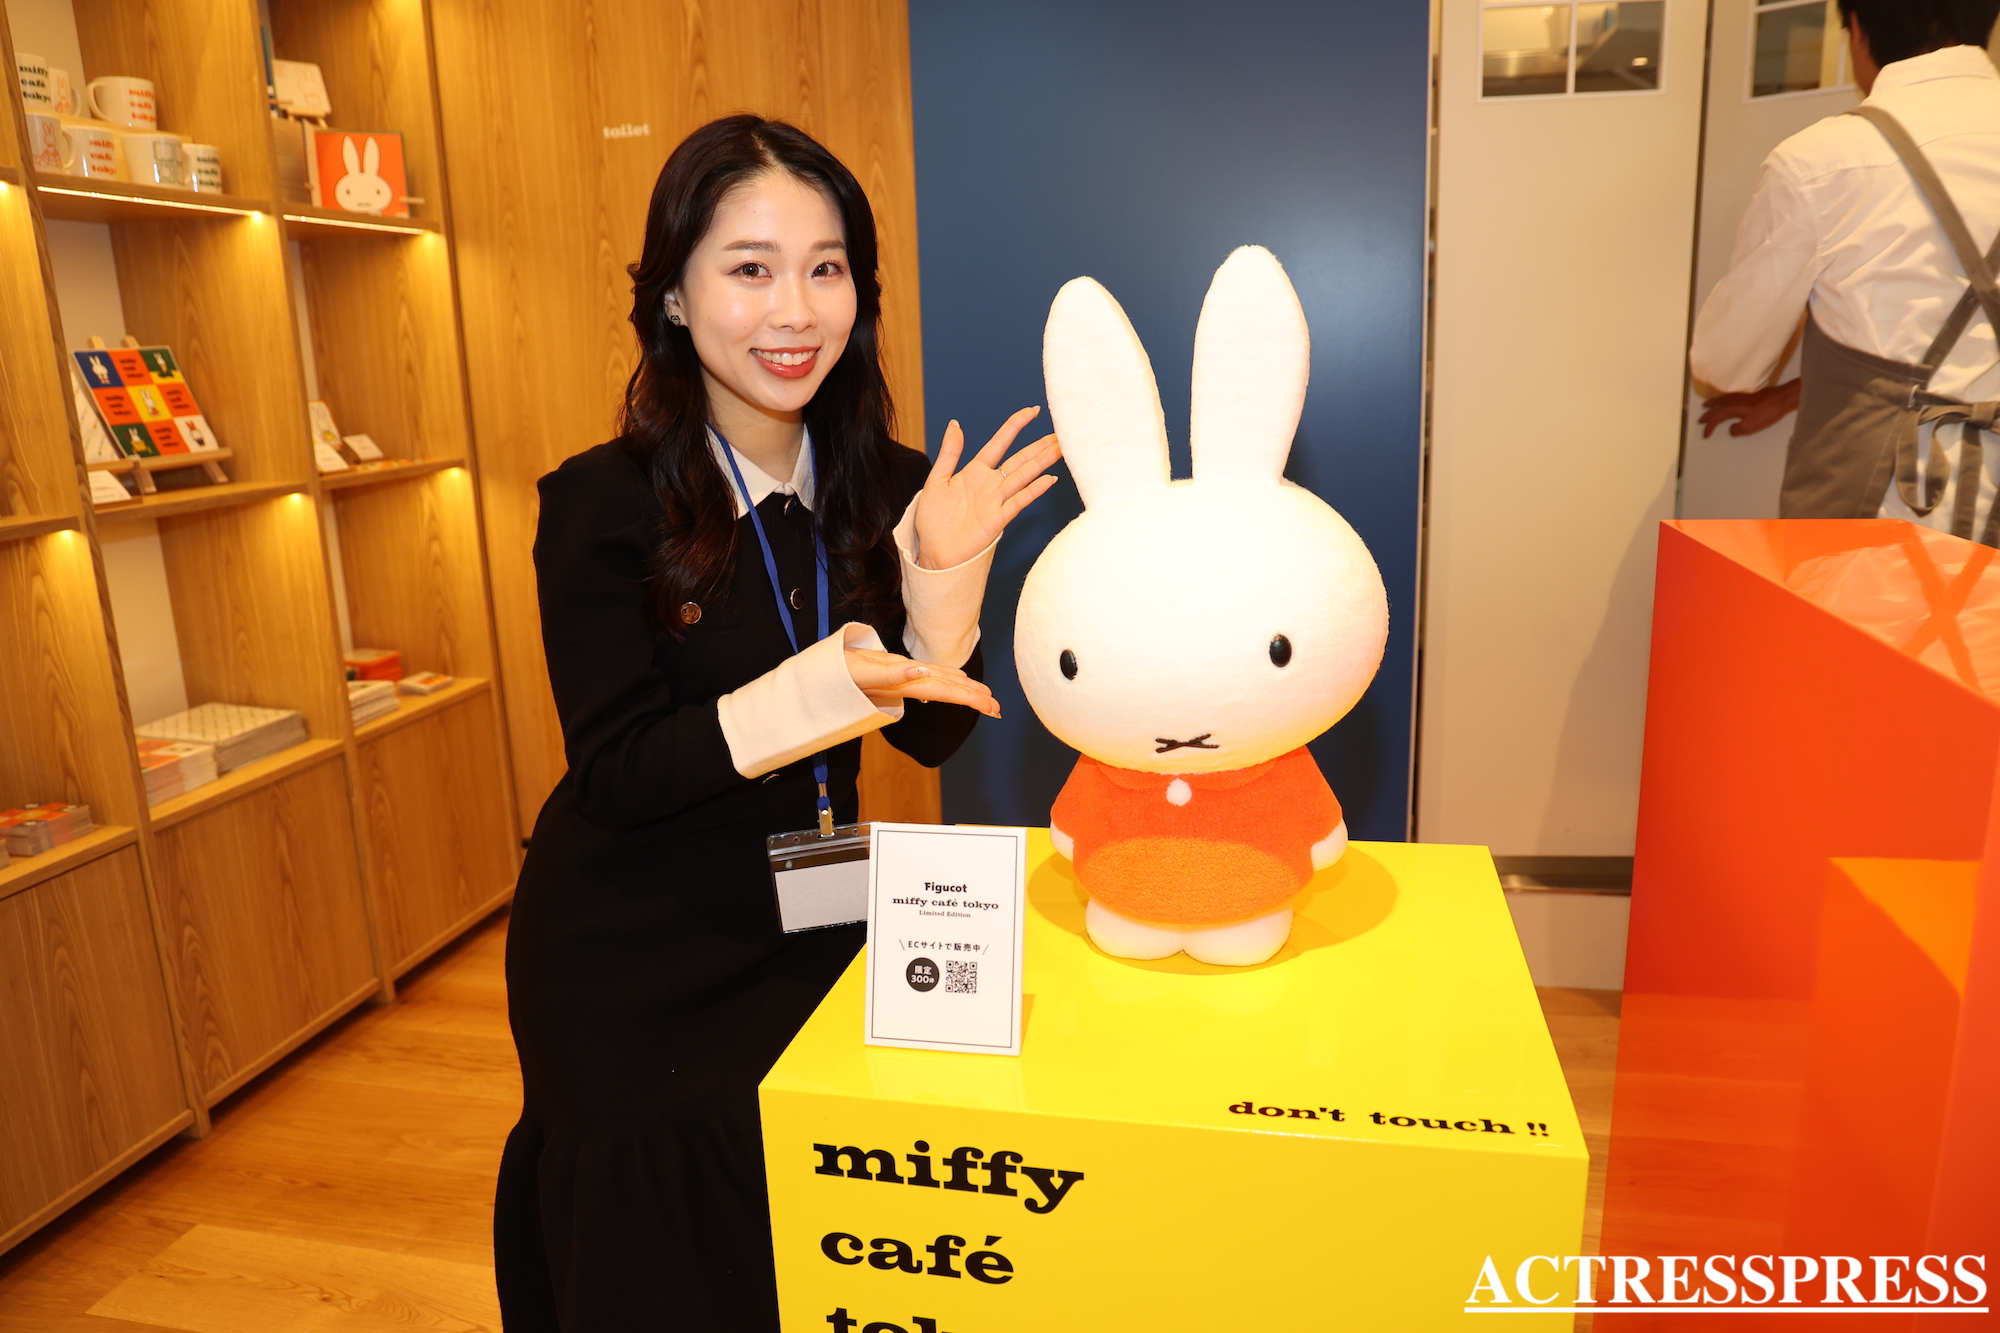 國近奈旺（ACTRESS PRESS REPORTER（アクトレスプレス リポーター）in miffy café tokyo（ミッフィーカフェ トーキョー）​​代官山駅 